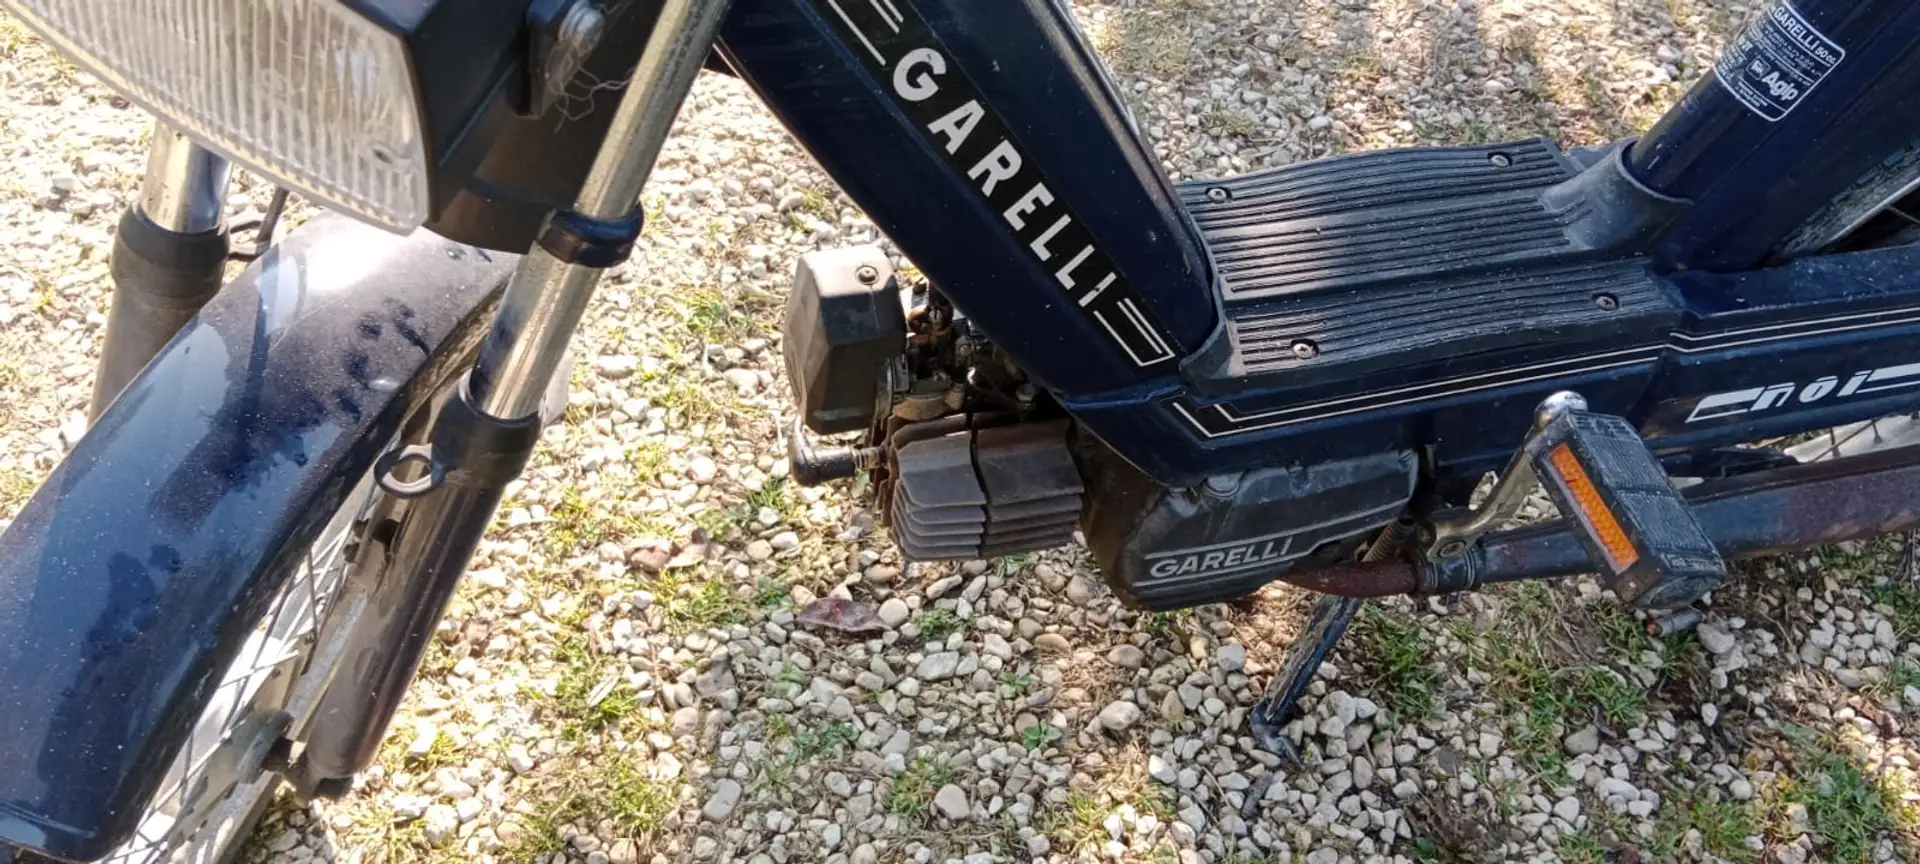 Garelli garelli NOI 50 CC anno 1980 plava - 1